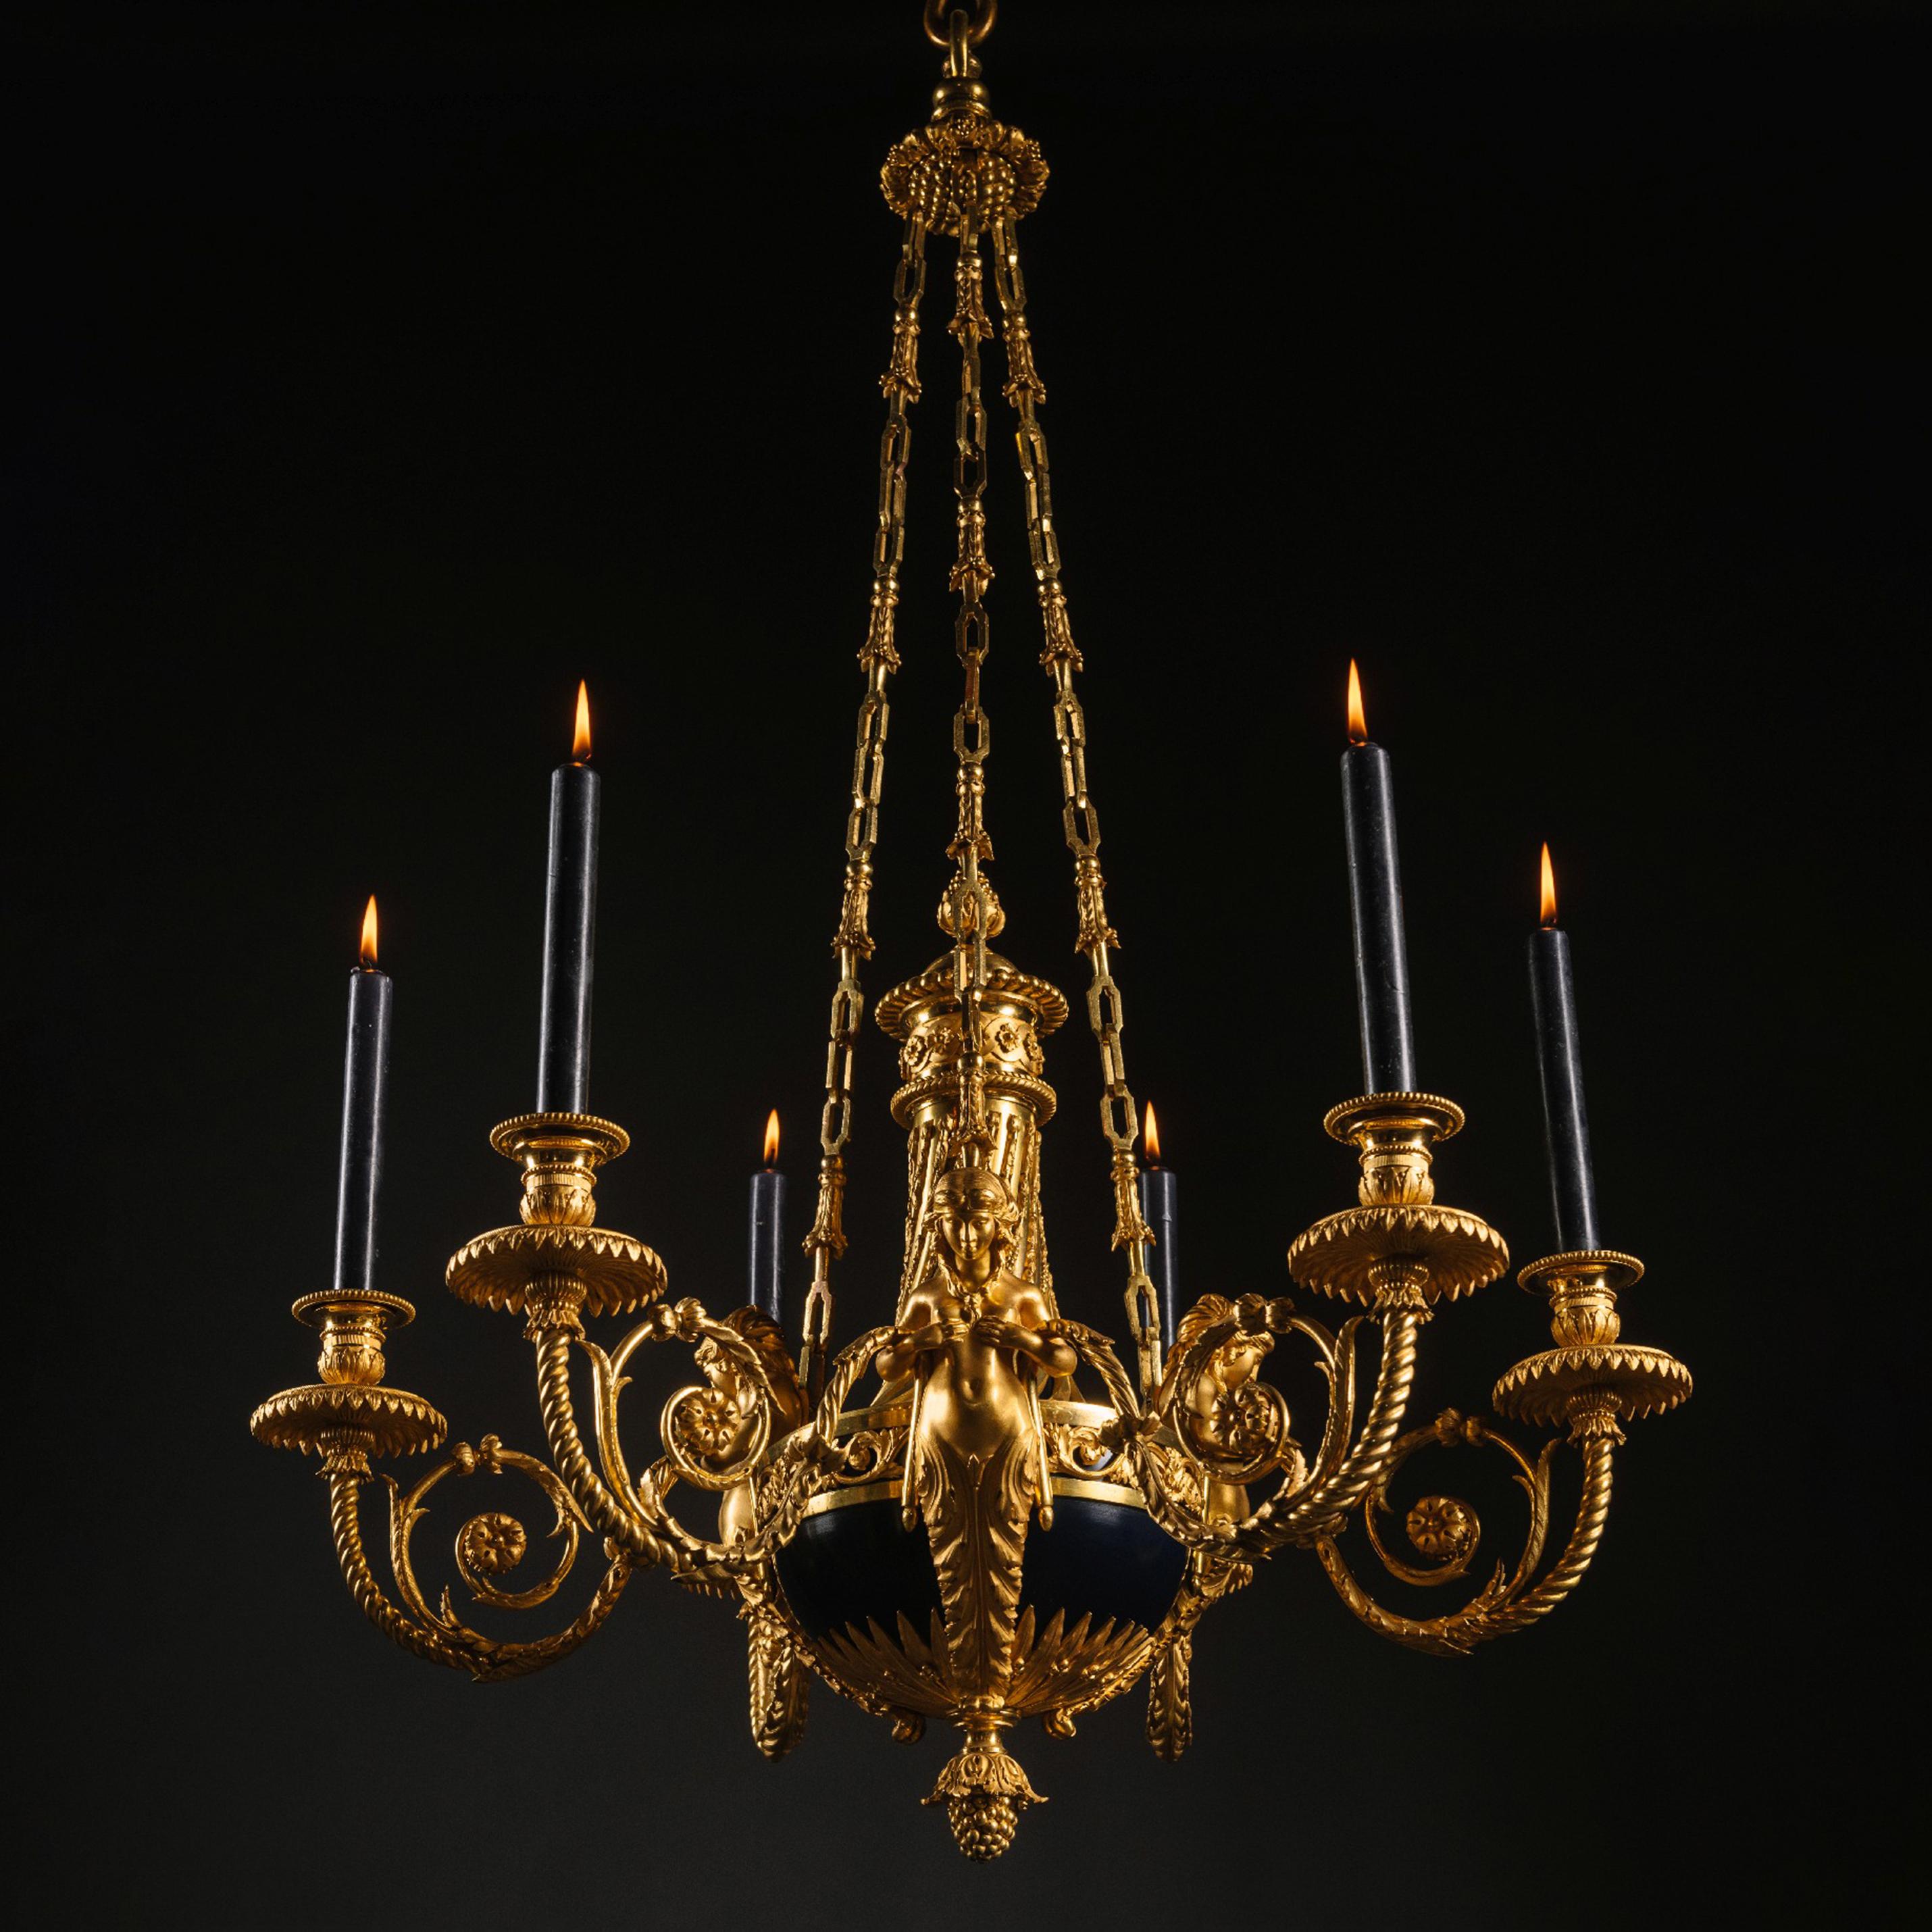 Vergoldeter Bronze-Kronleuchter 'aux Termes' im Stil Louis XVI
Emmanuel-Alfred (dit Alfred II) Beurdeley, Paris, zugeschrieben.

Modelliert mit drei Karyatidenfiguren, die spiralförmige Zweige halten, aus denen Kerzentüllen herausragen. Das Ganze